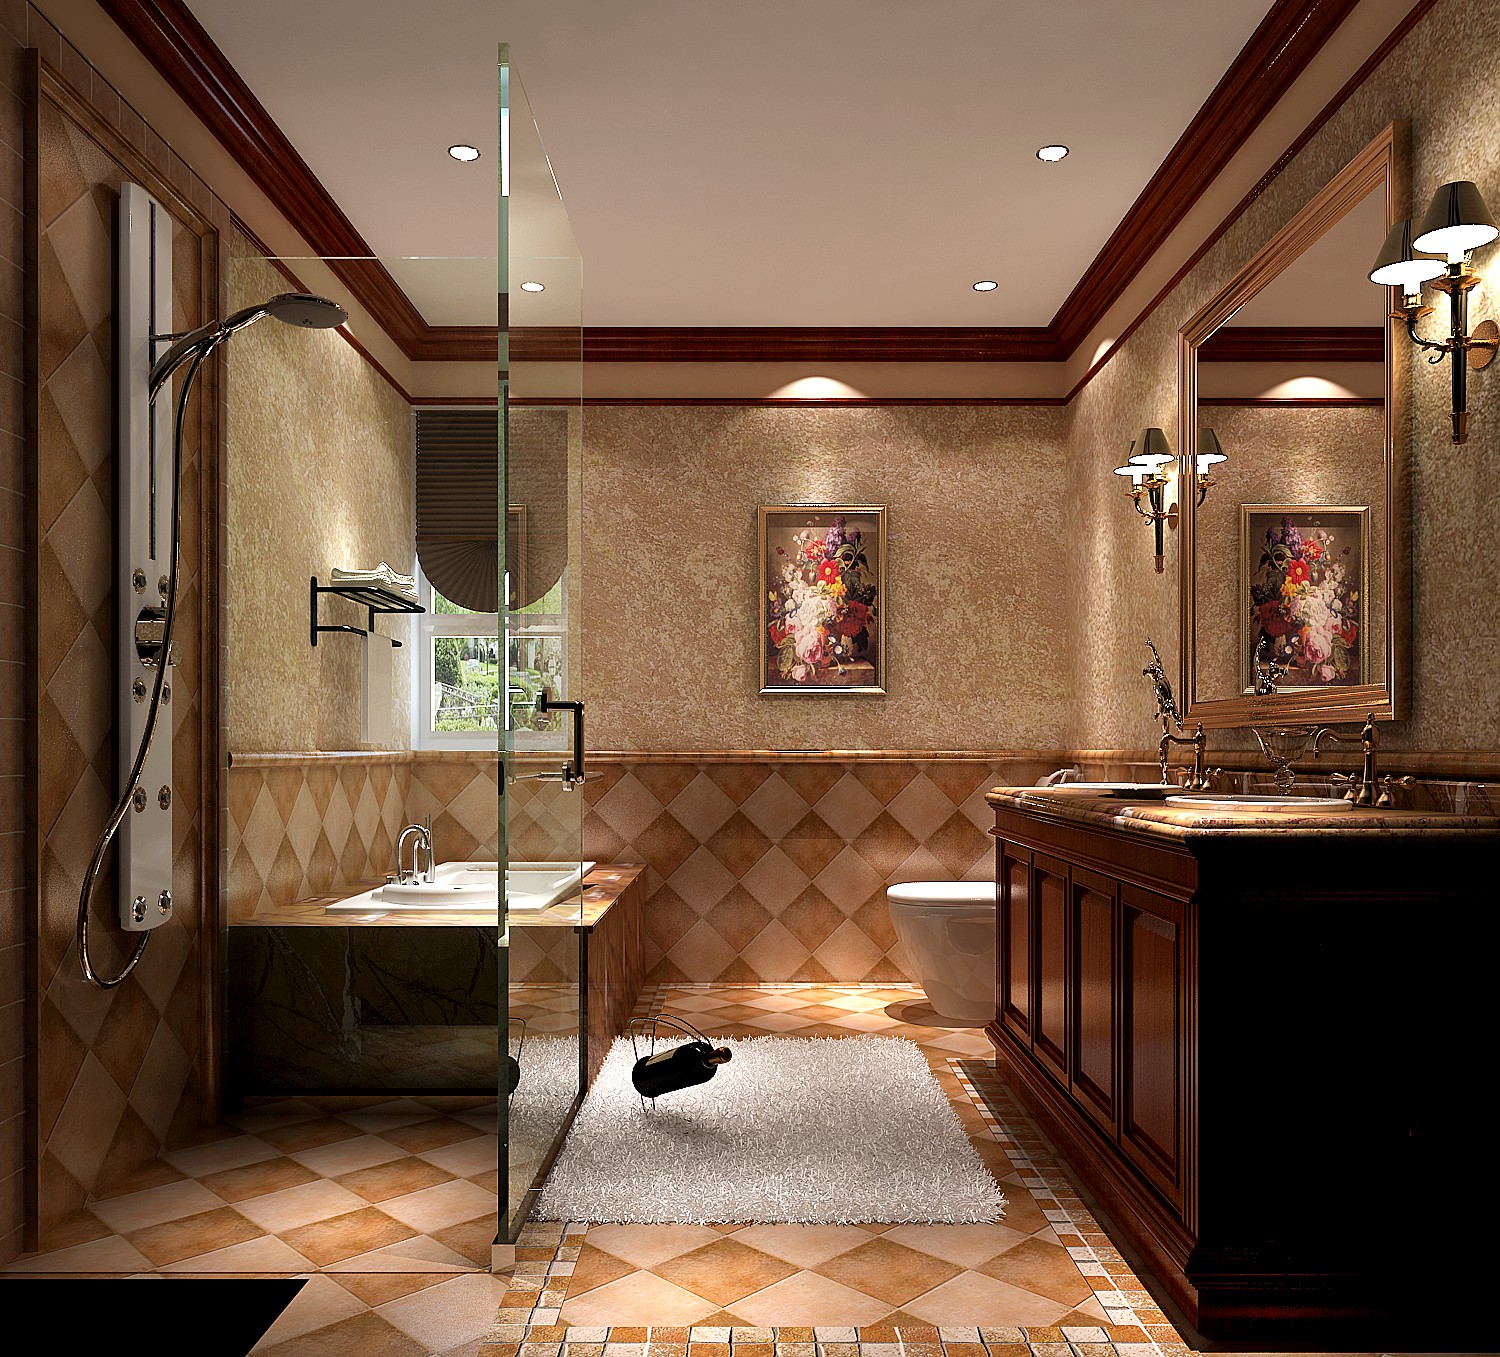 托斯卡纳 混搭 白领 收纳 小资 高度国际 小清新 设计装修 卫生间图片来自高度国际王慧芳在托斯卡纳的金色漫香苑的分享